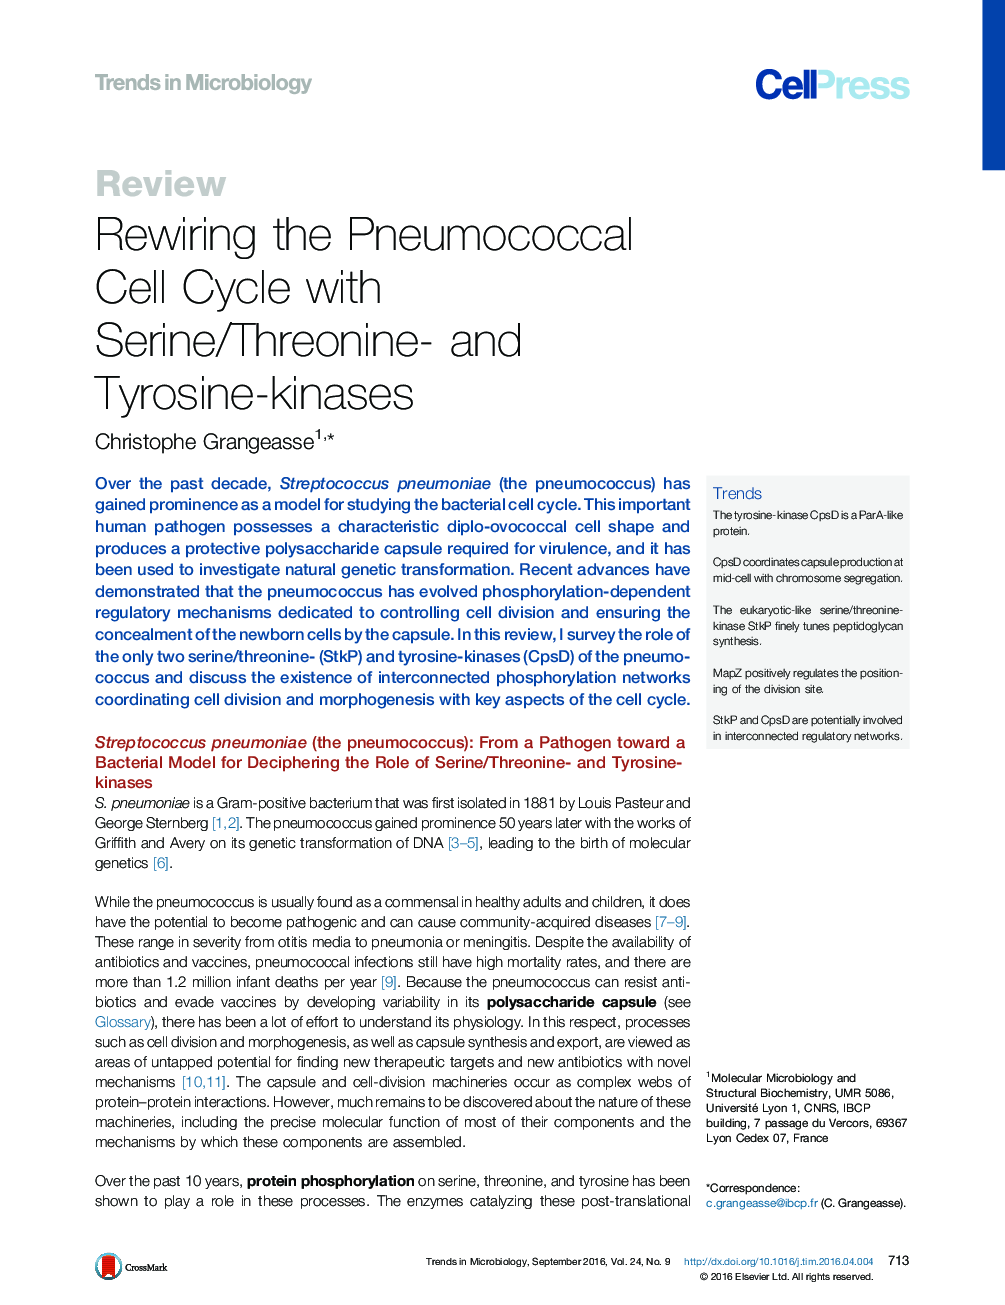 بازسازی چرخه سلول پنوموکوک با سریین / ترئونین و تریستین کیناز 